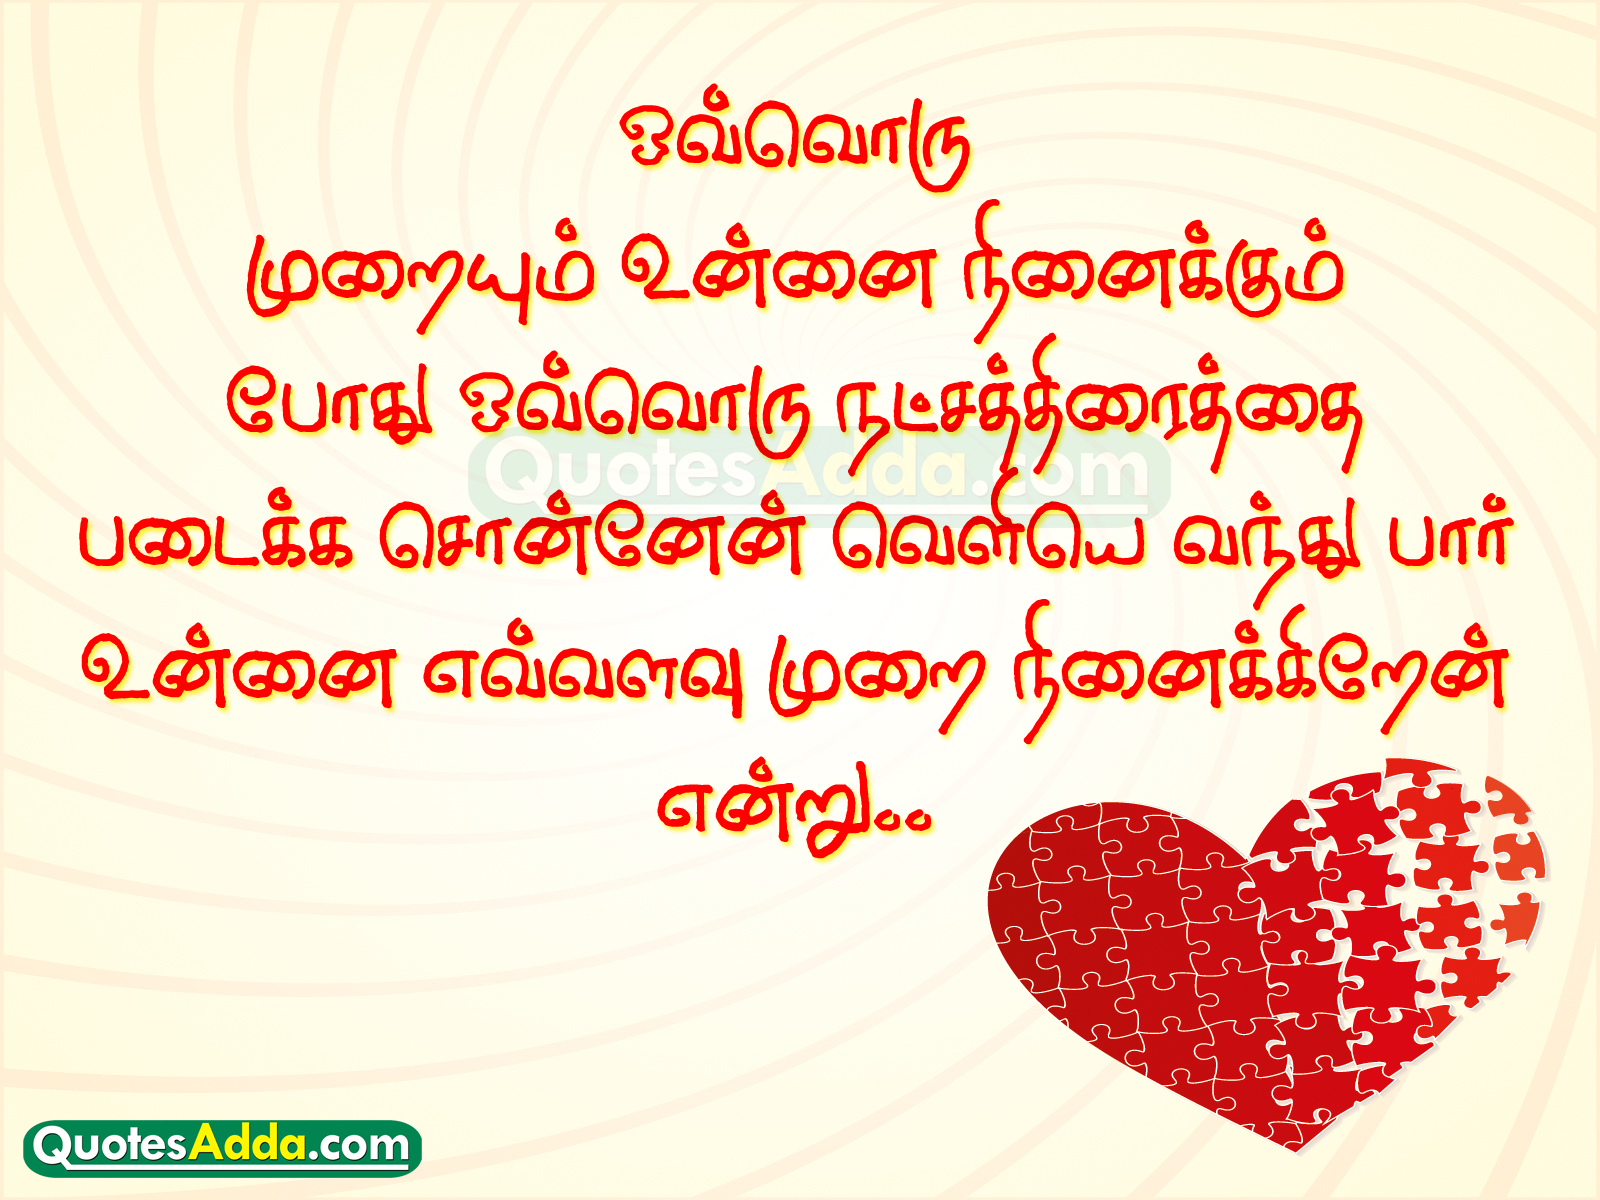 Tamil Love Quotes QuotesAdda Telugu Quotes Tamil Quotes